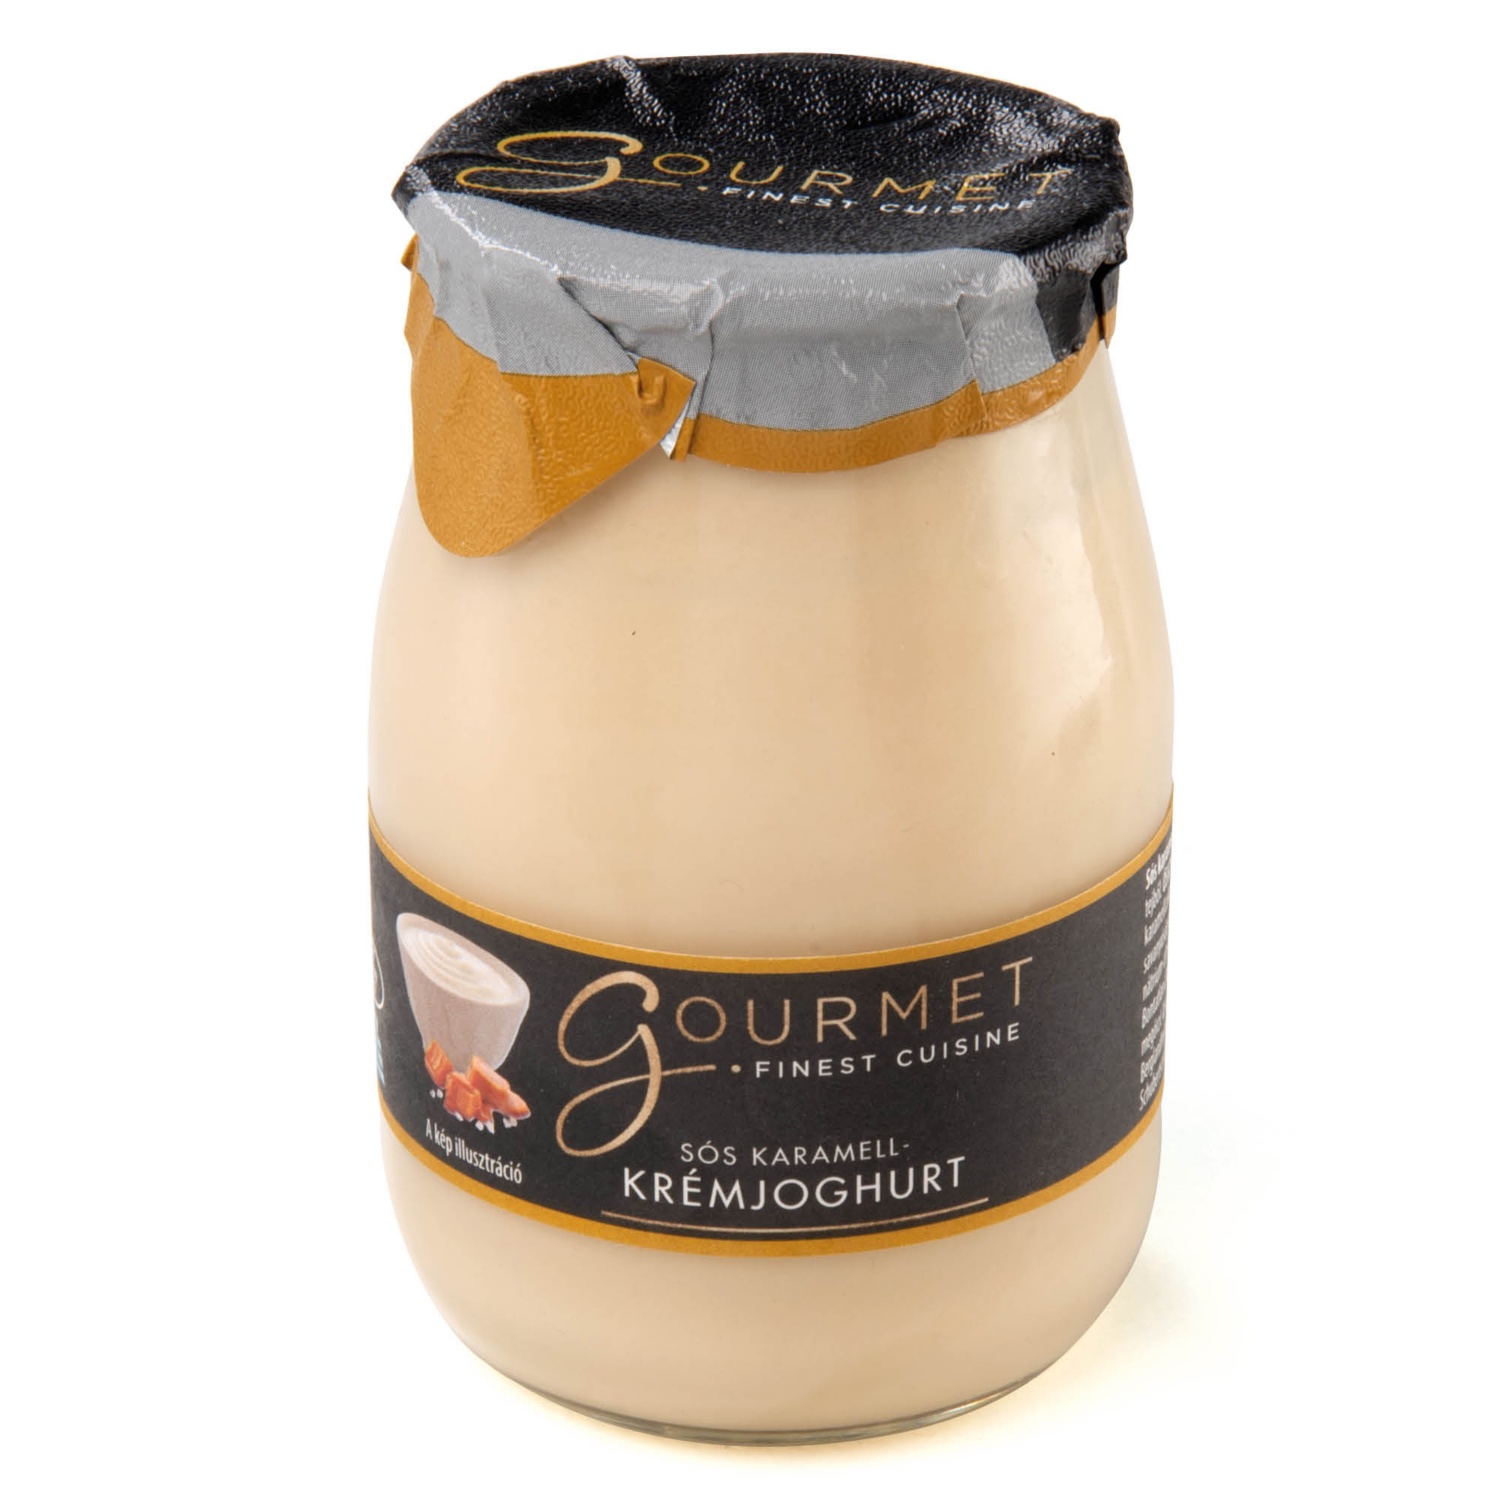 GOURMET Krémjoghurt, sós karamellás, 180 g